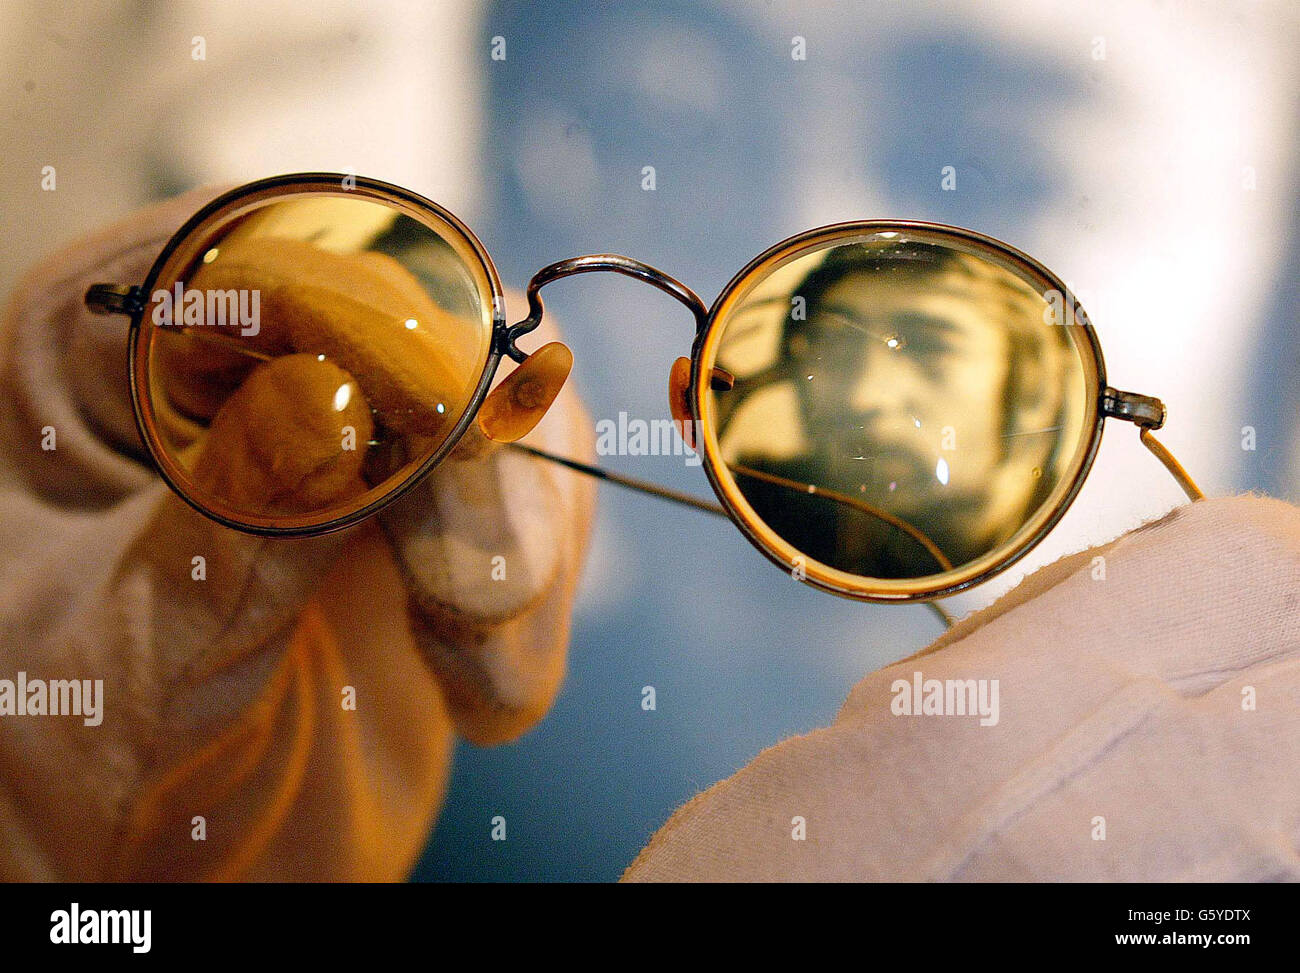 Occhiali Lennon Immagini e Fotos Stock - Alamy